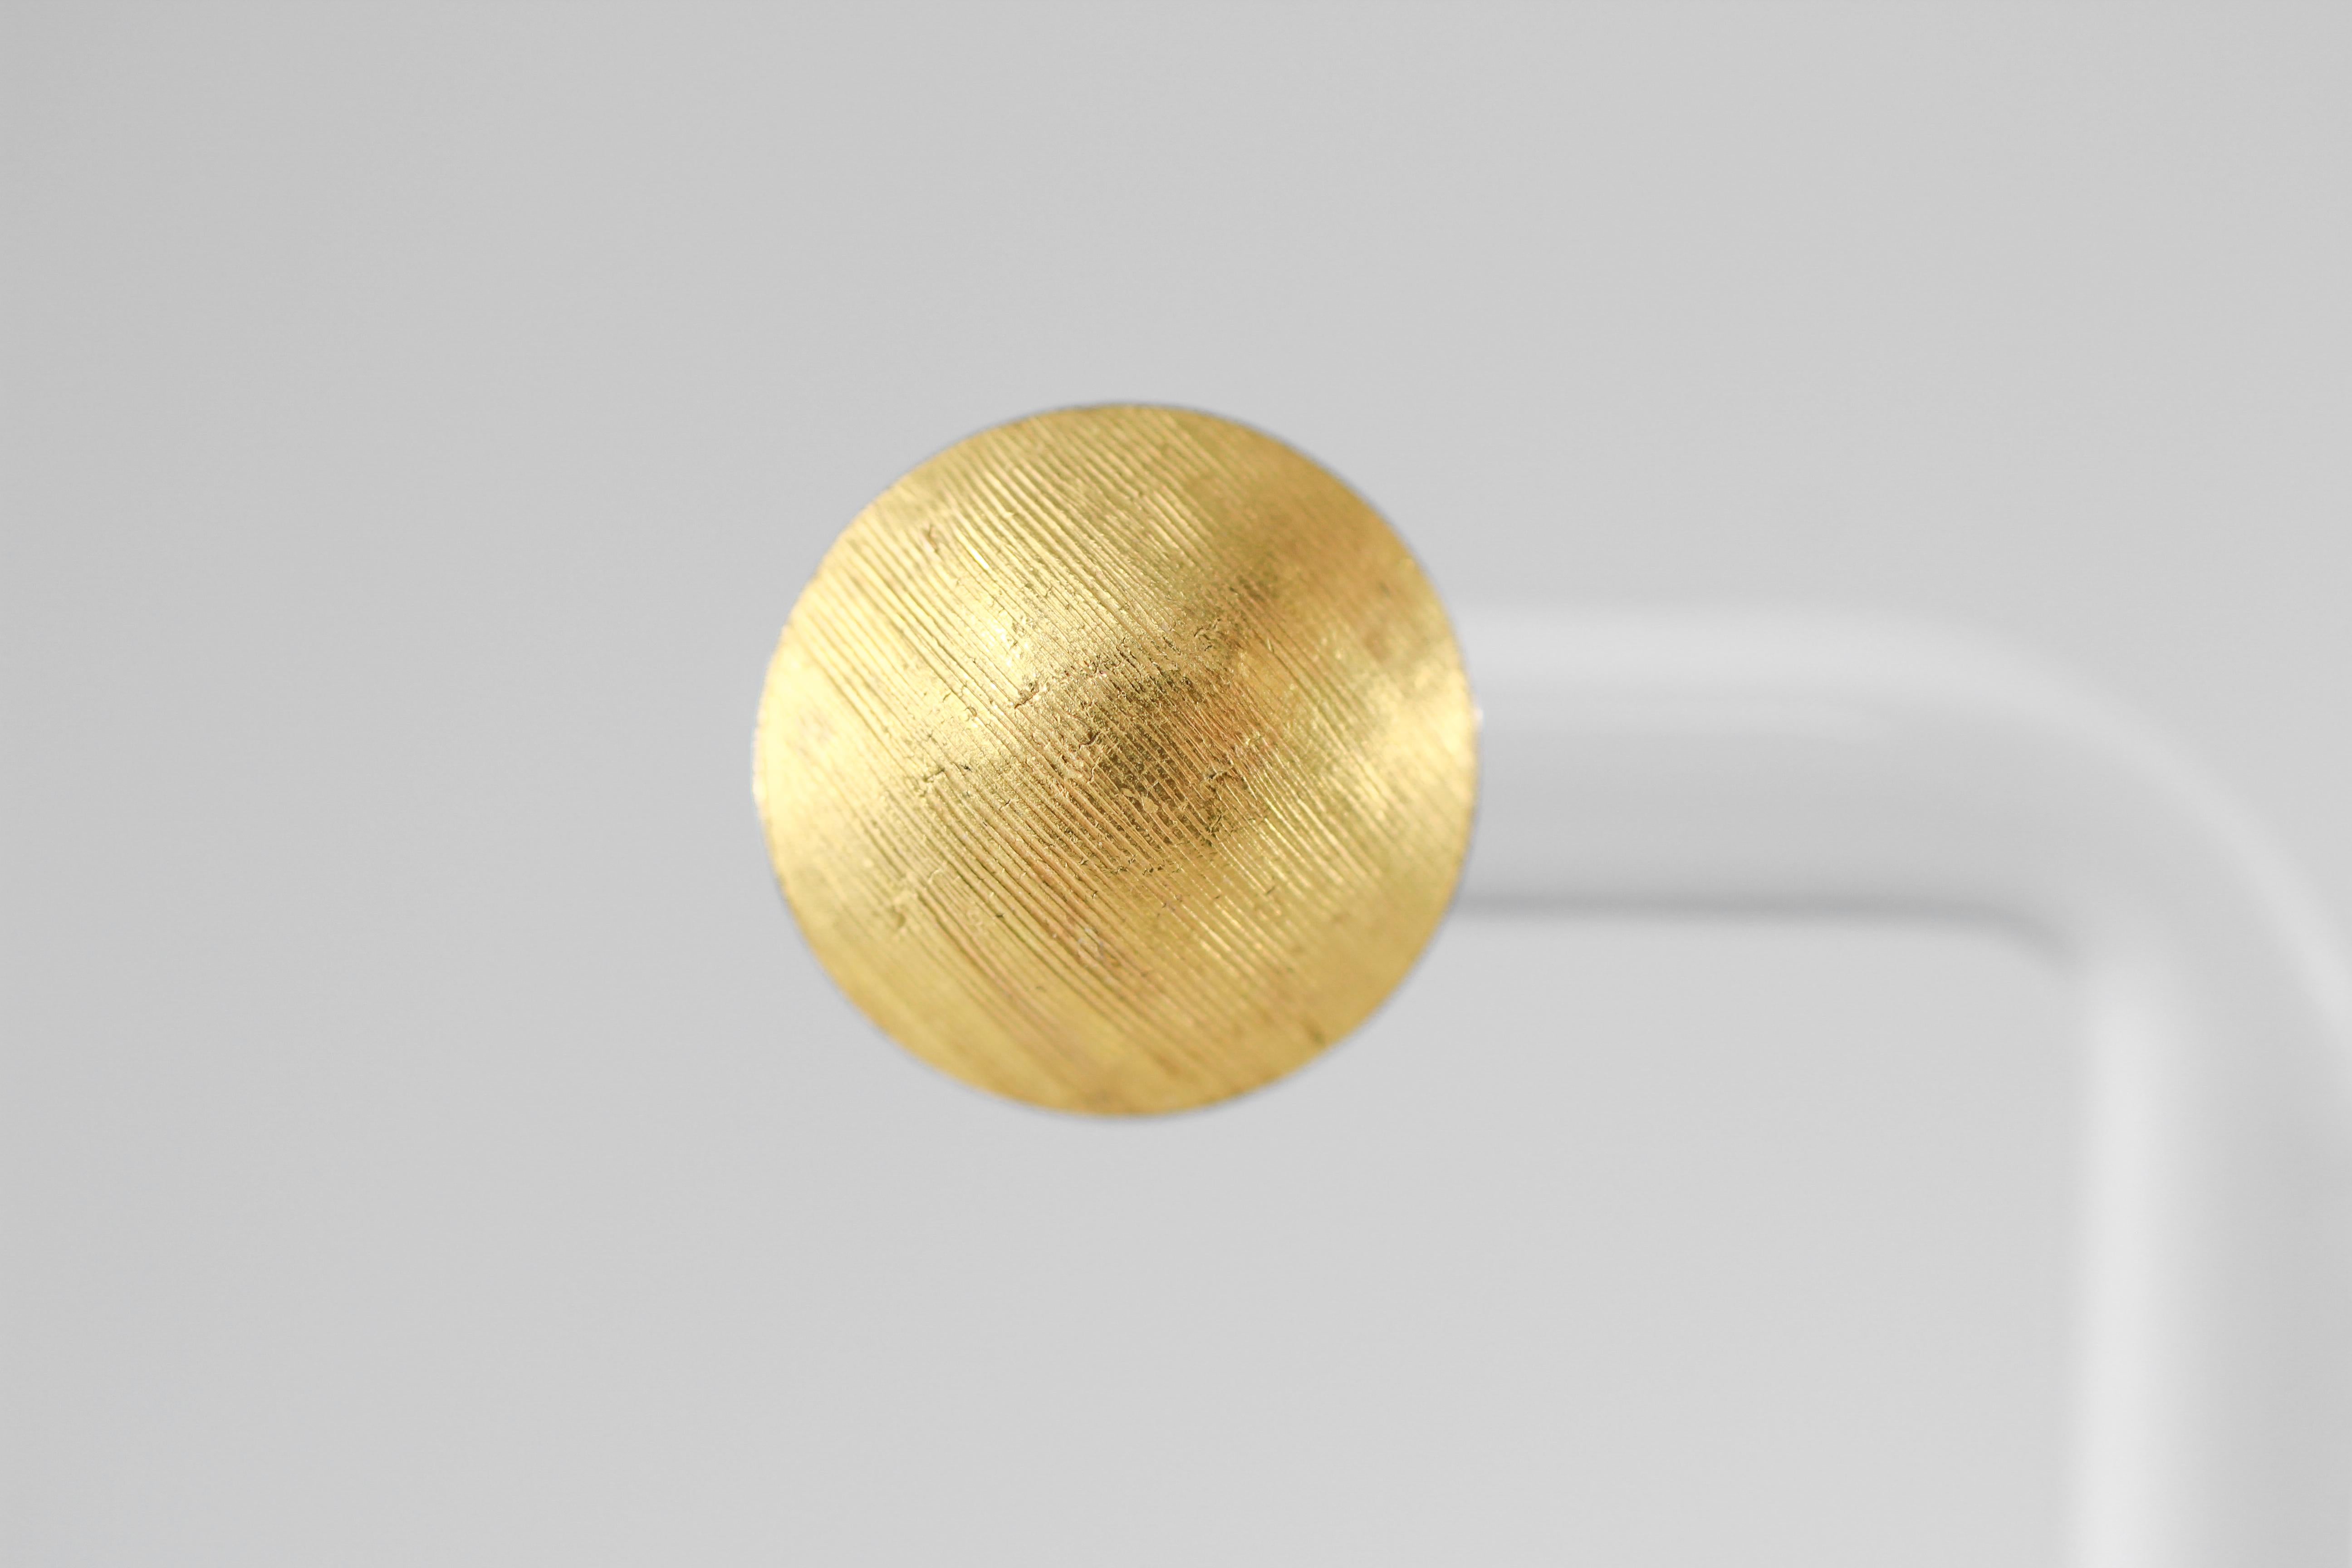 Benutzerdefinierter Eintrag. Elegante kleine Ohrstecker aus 21-karätigem Gold mit 18-karätigem Ohrstecker. Die passen buchstäblich zu allem. Modern und minimalistisch im Design werden sie von Hand gefertigt. Die Oberfläche dieser Ohrringe wird von